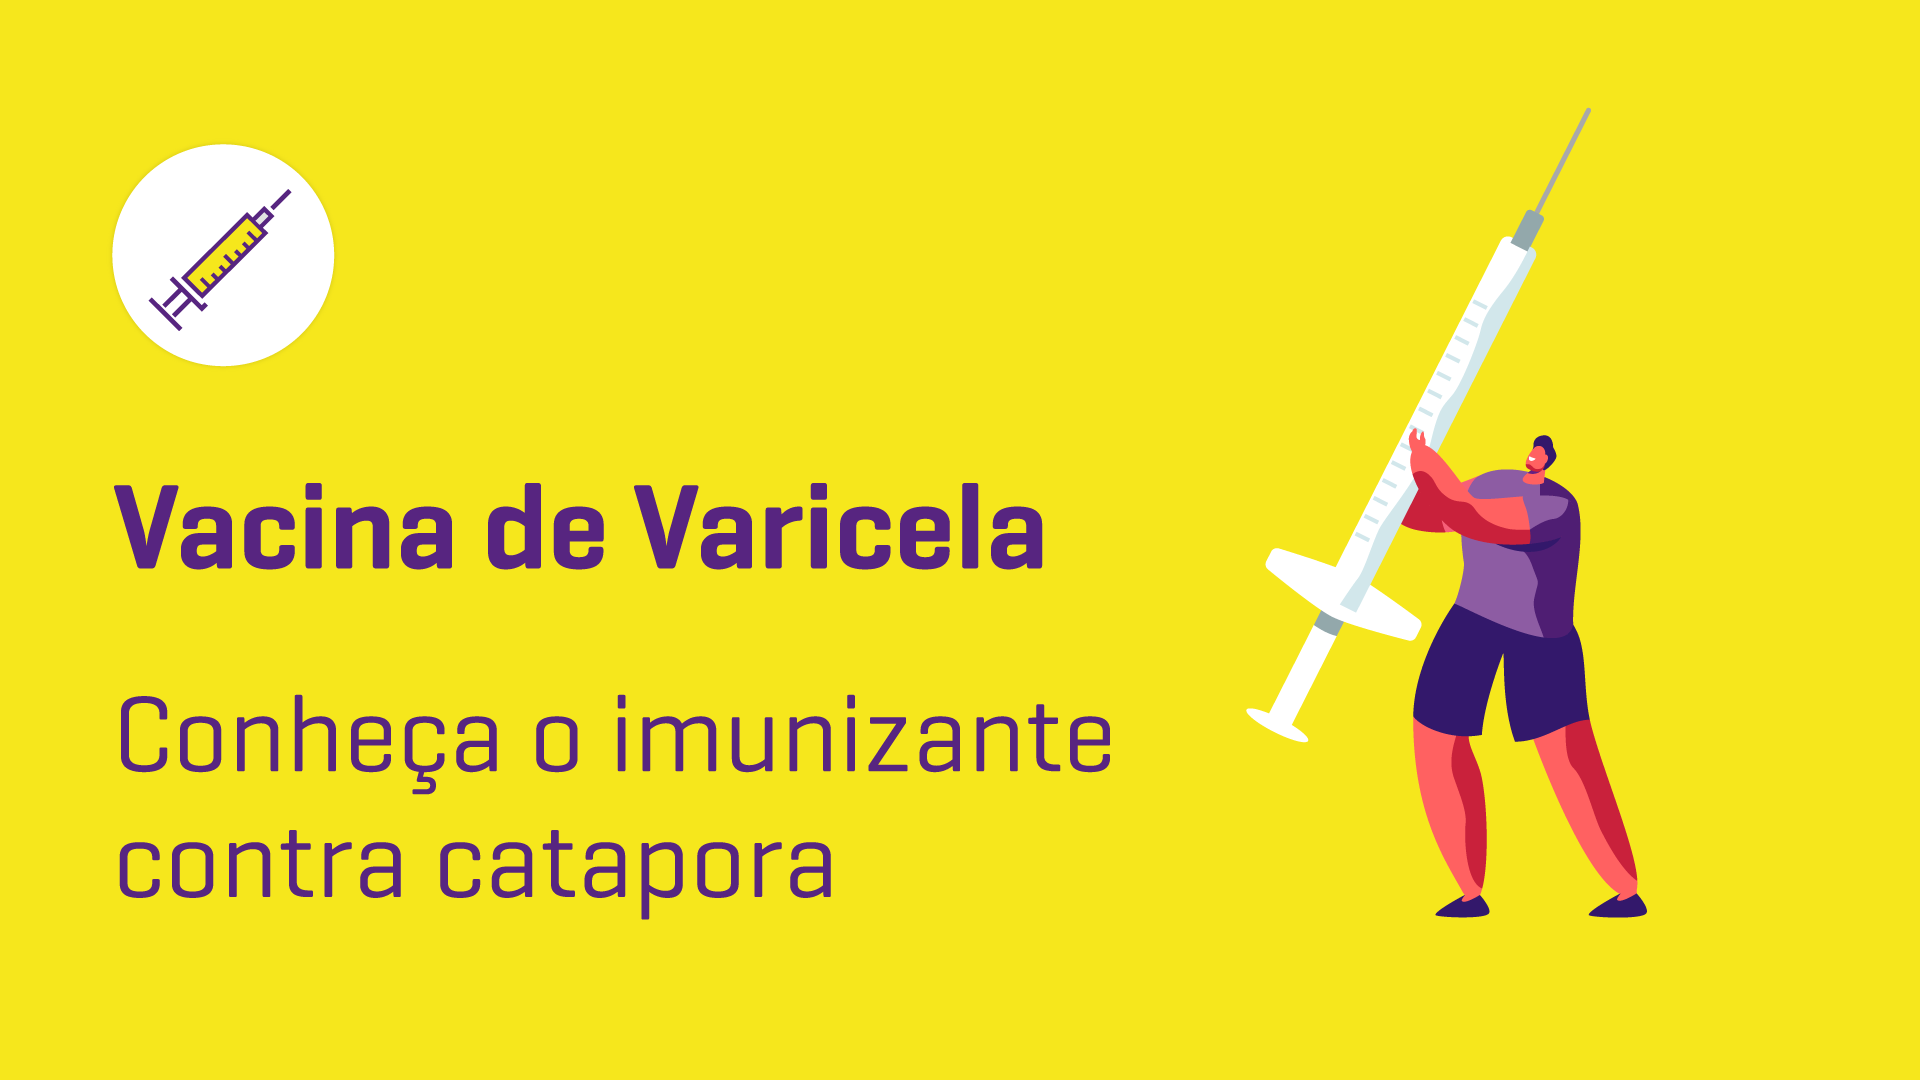 Vacina Varicela: conheça o imunizante contra catapora